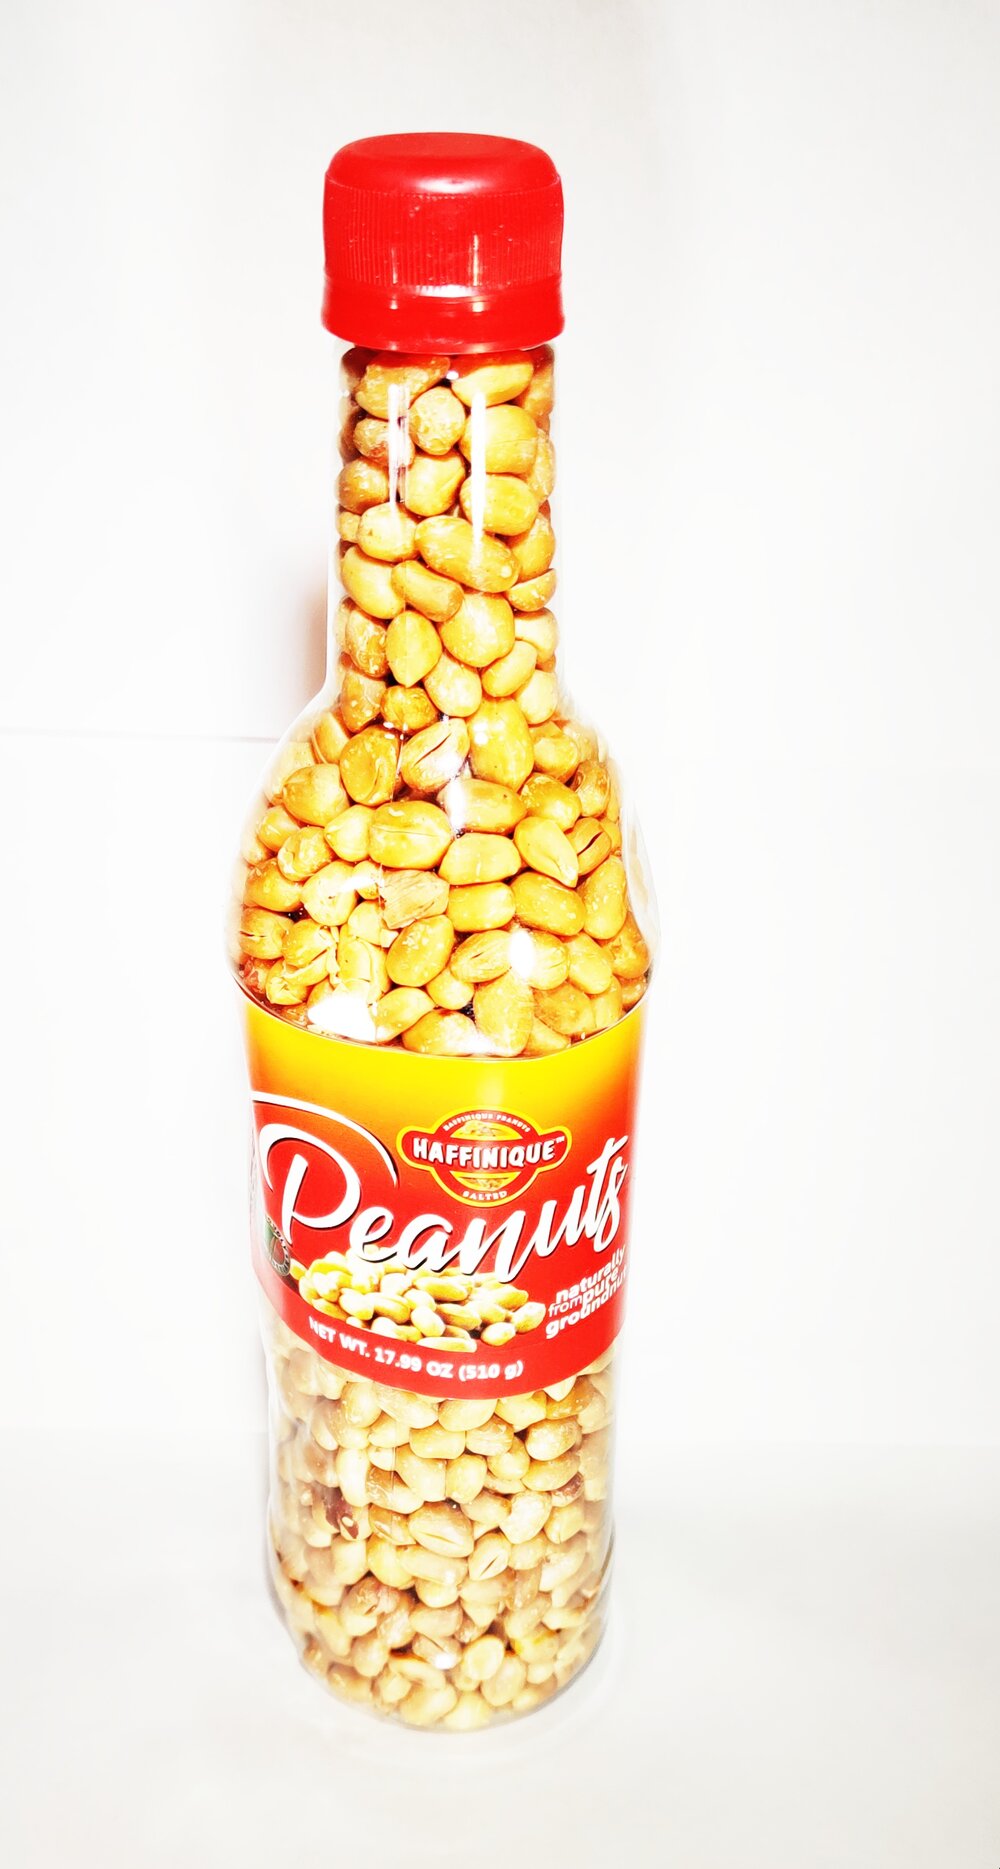 Haffinique Peanuts 350g